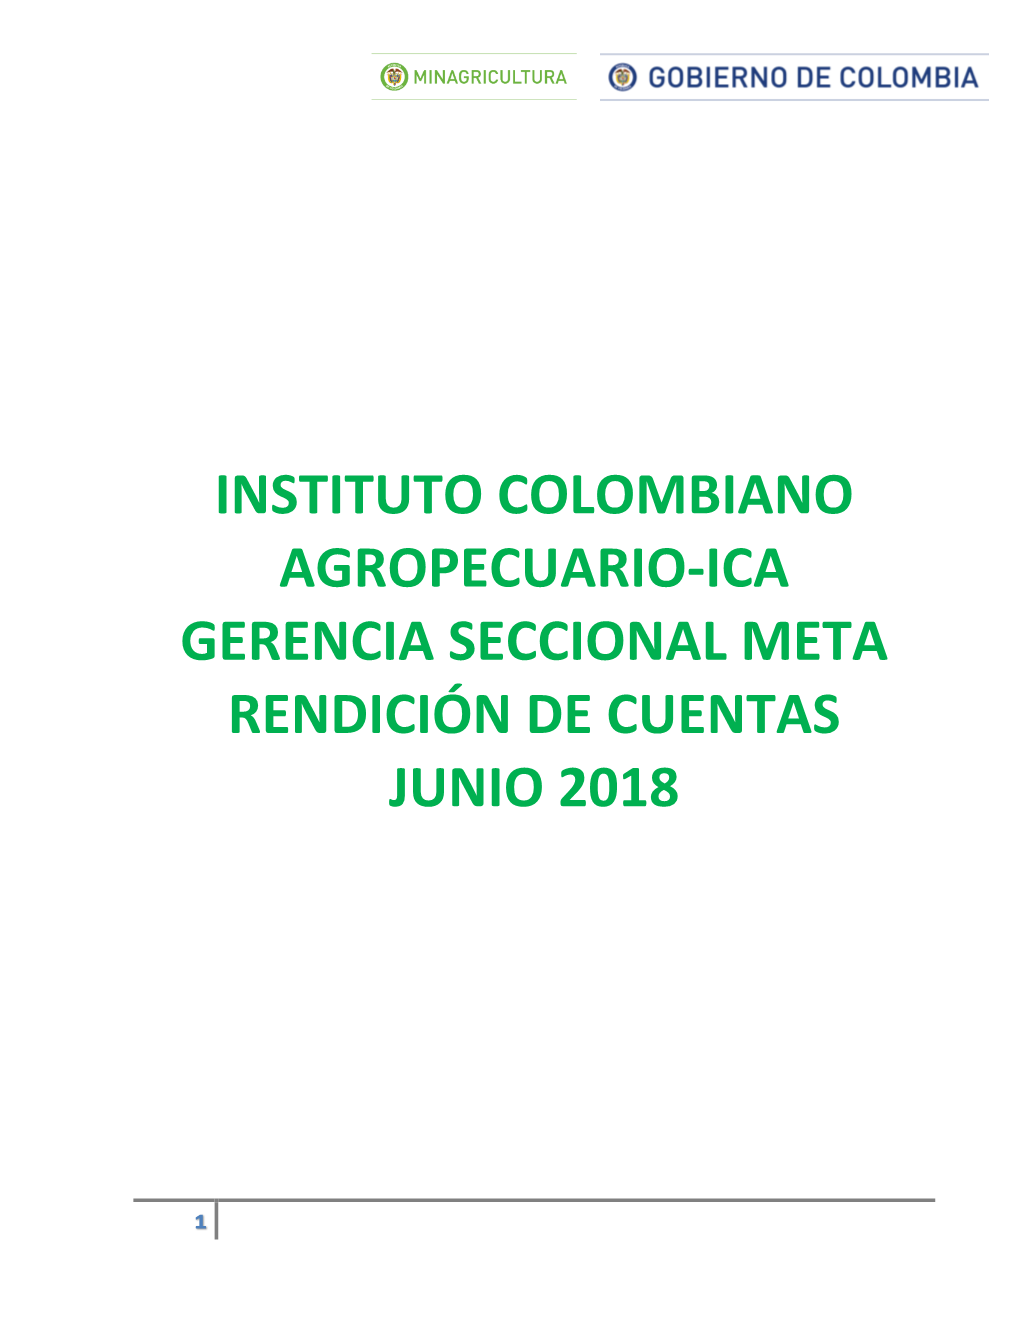 Instituto Colombiano Agropecuario-Ica Gerencia Seccional Meta Rendición De Cuentas Junio 2018